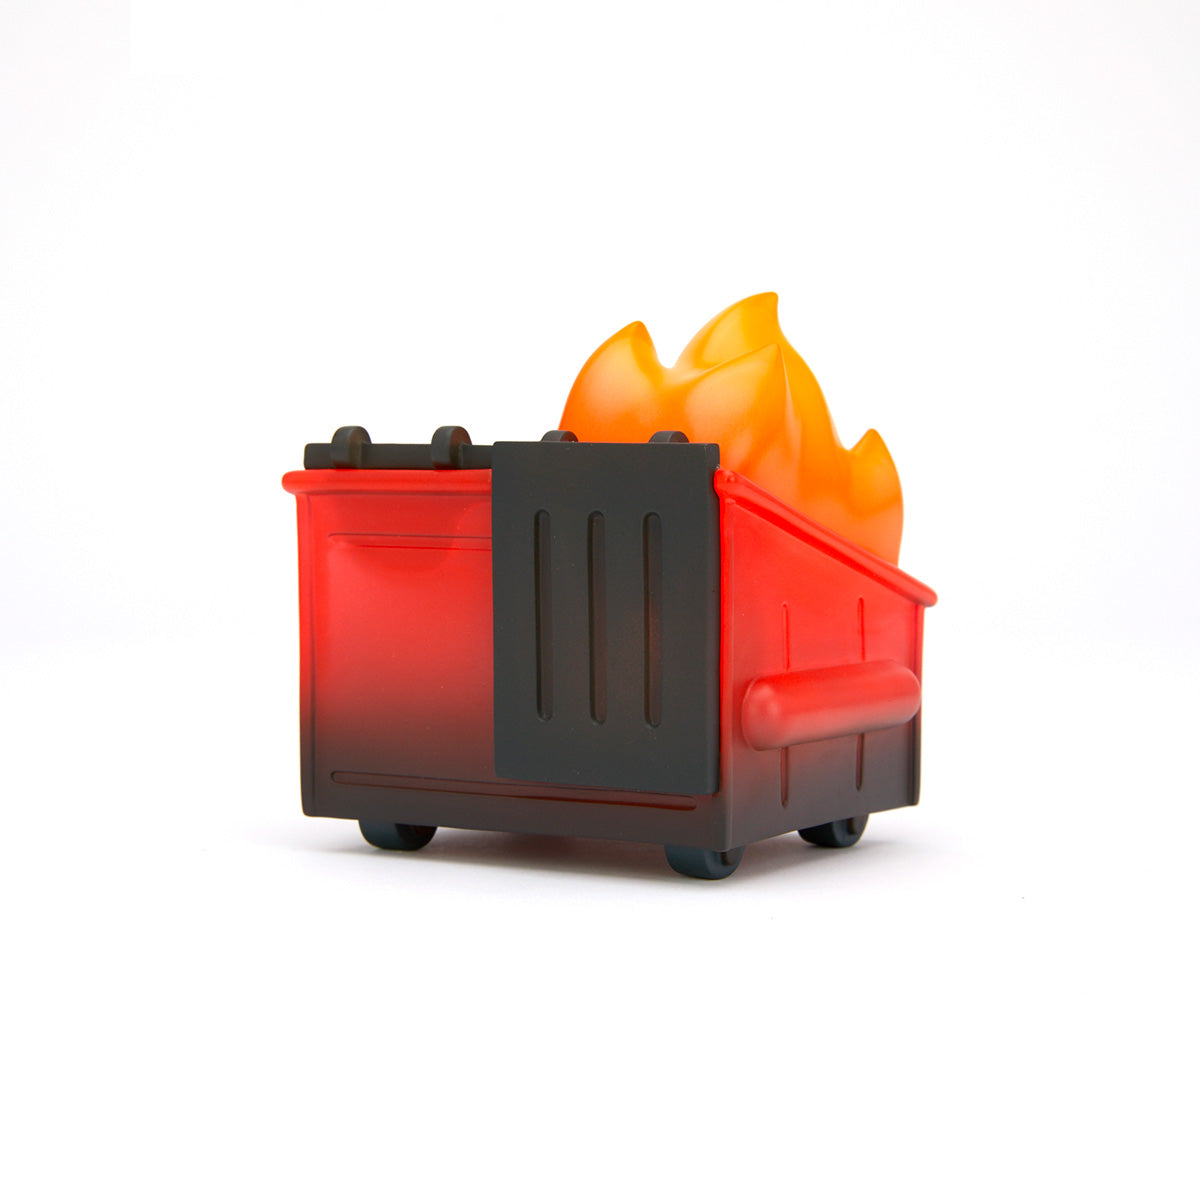 Dumpster Fire - Hellfire Vinyl Figure